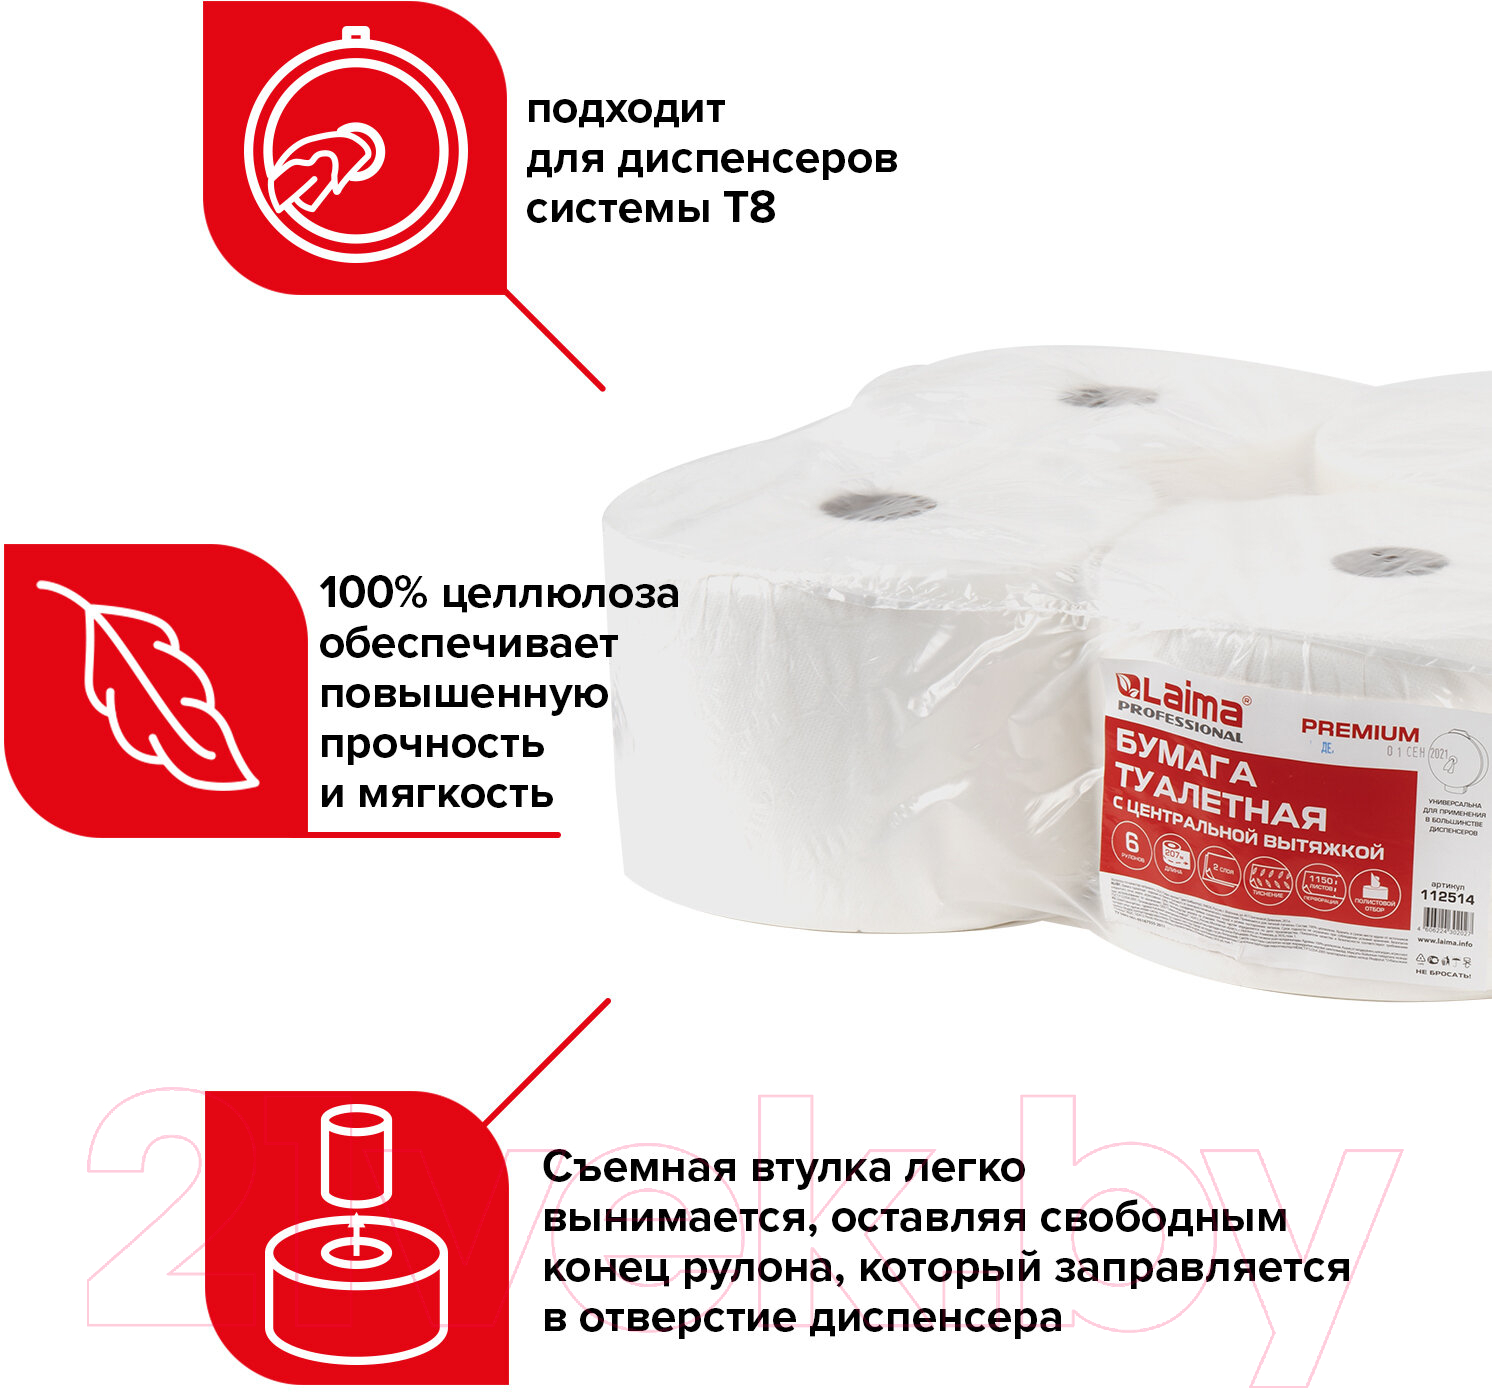 Туалетная бумага Laima Premium / 112514